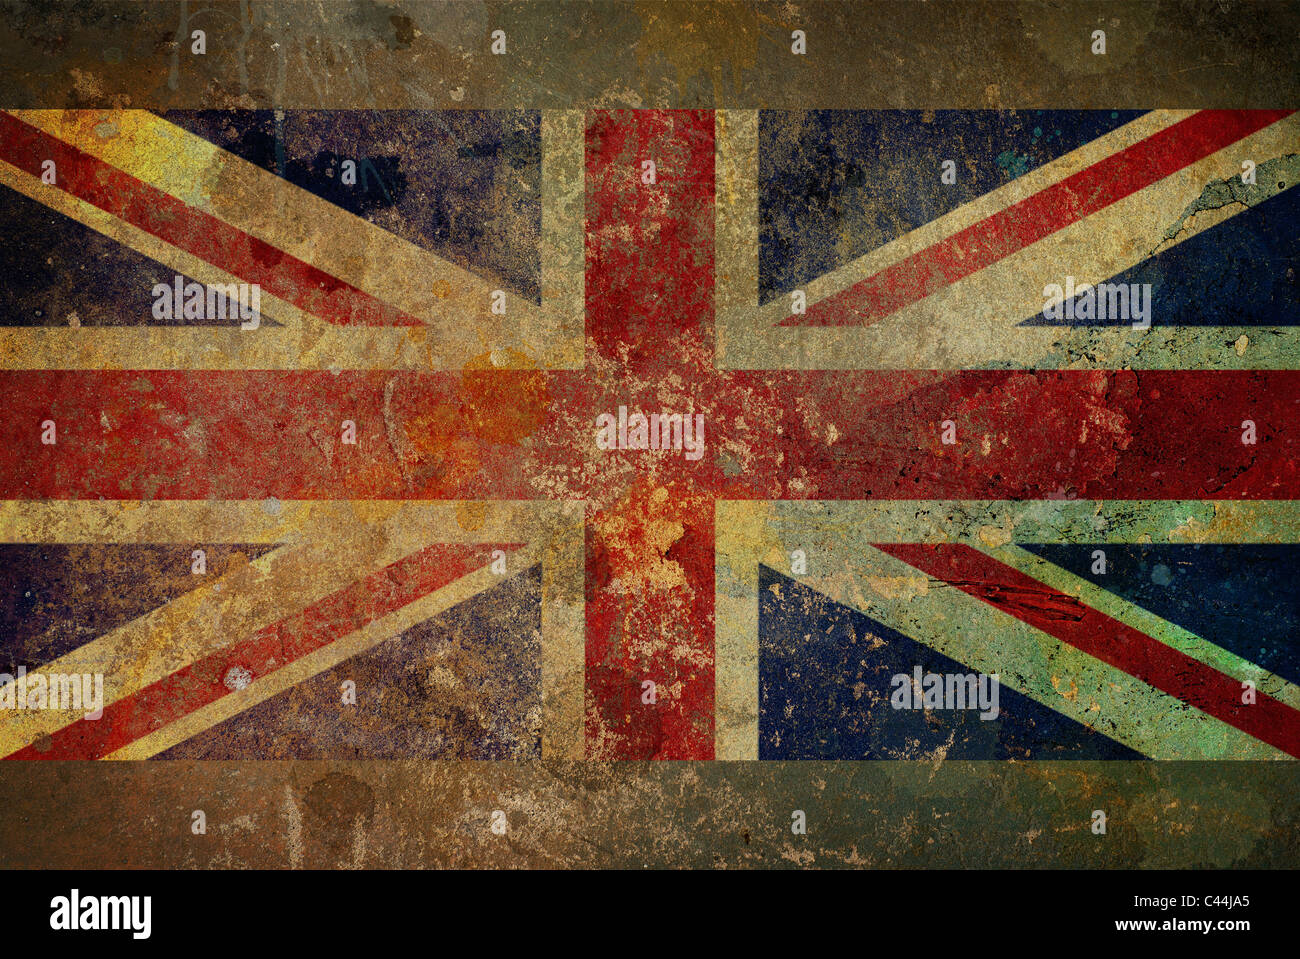 Illustration of a grunge style British flag - Union Jack on rough stone surface Stock Photo